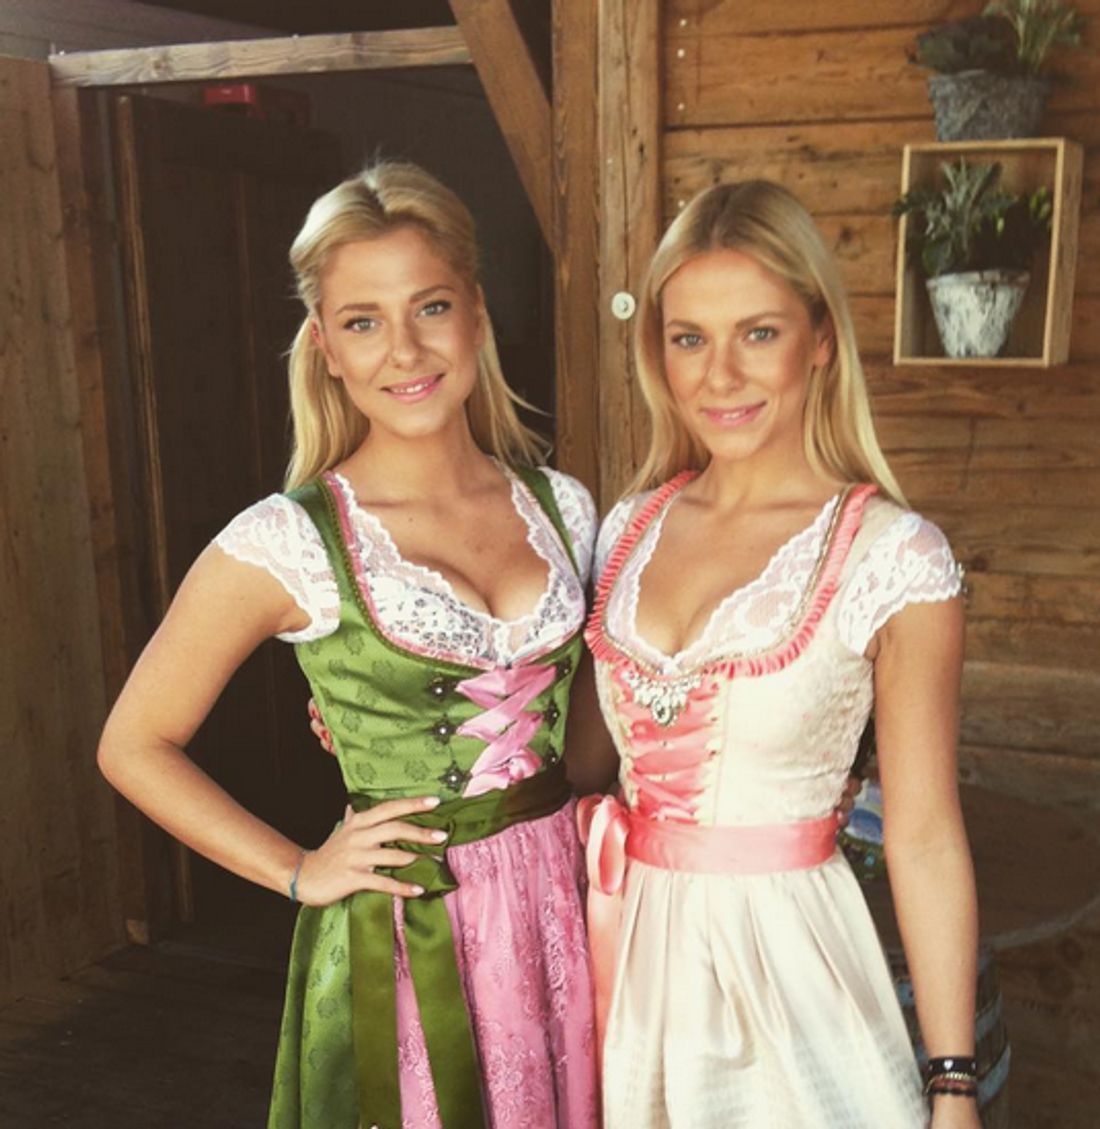 Gzsz Valentina Pahde So Süß And Sexy Feiert Sie Mit Ihrer Schwester Auf Dem Oktoberfest Bravo